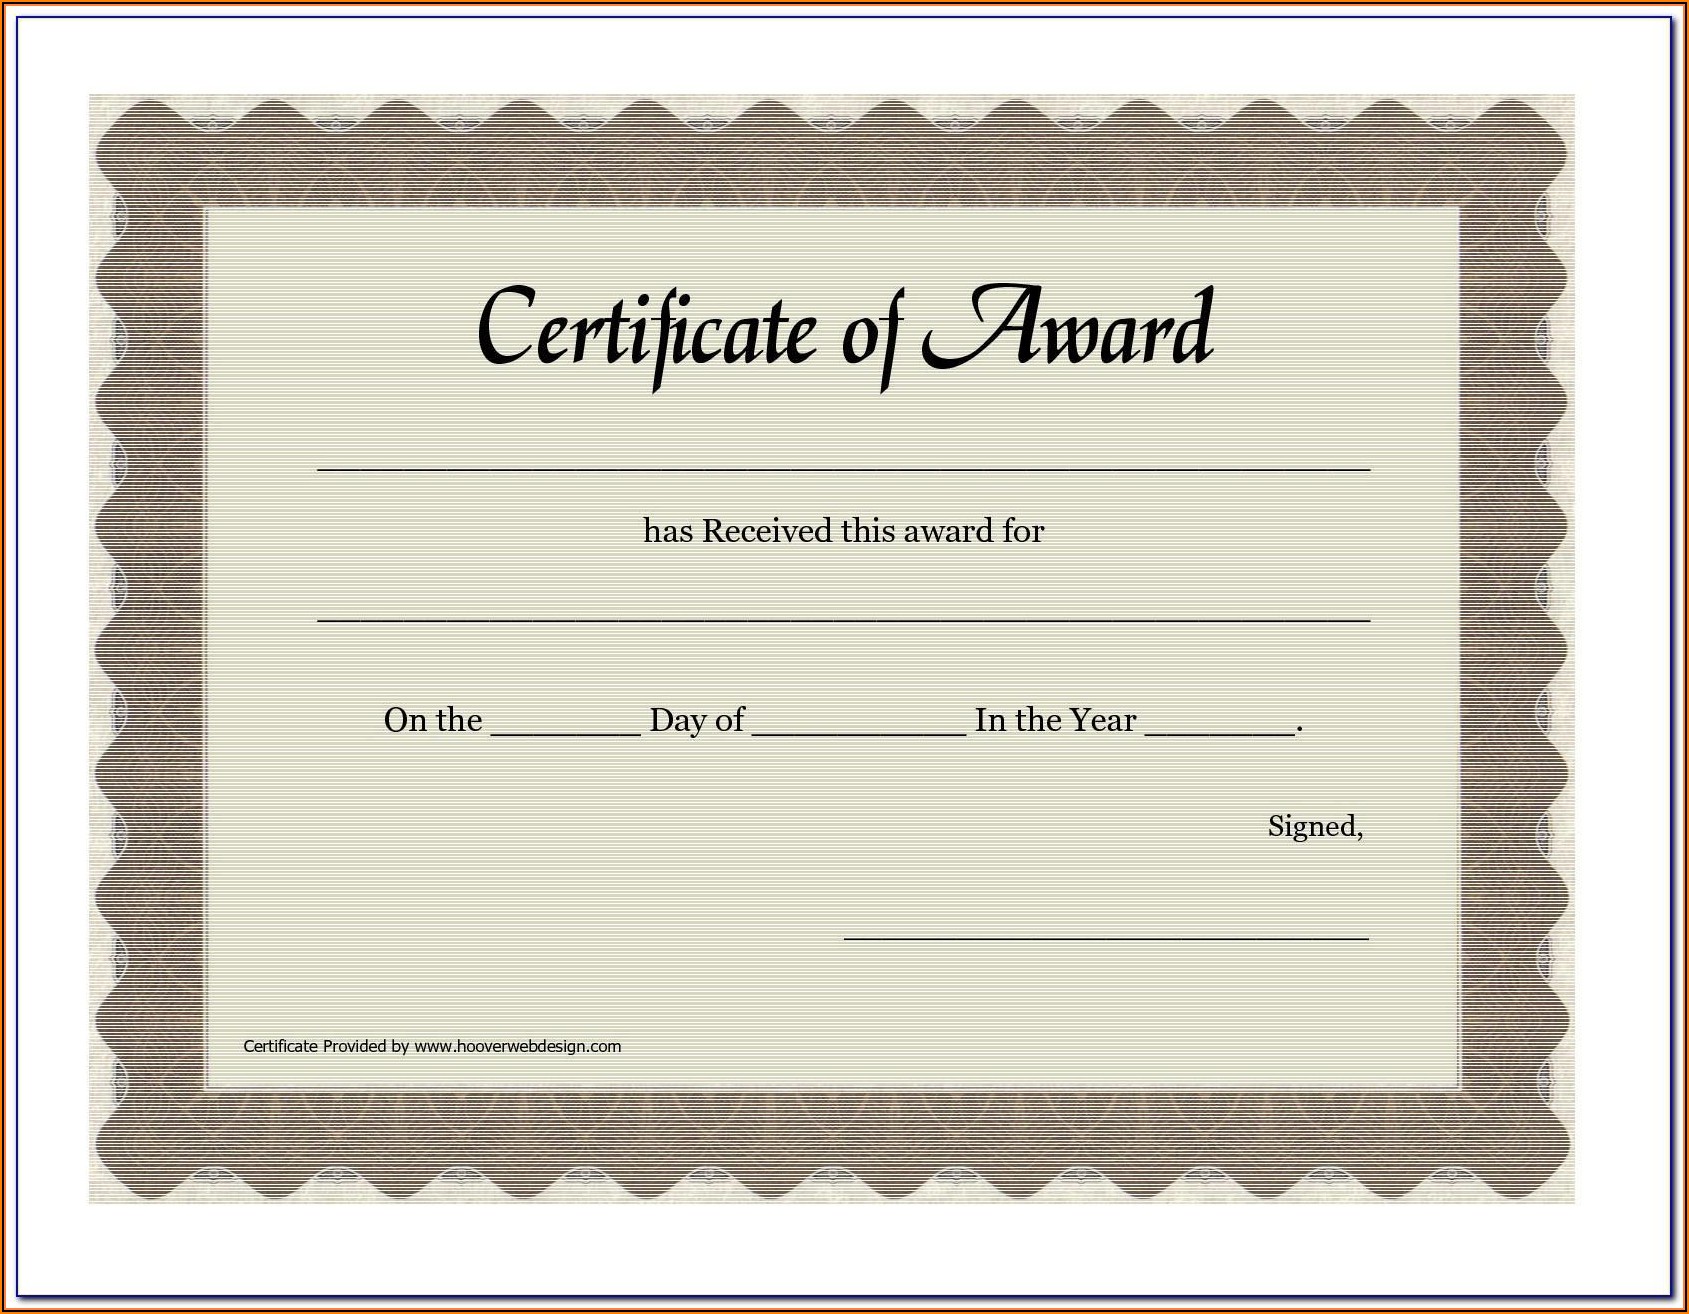 Sample Certificate Of Award